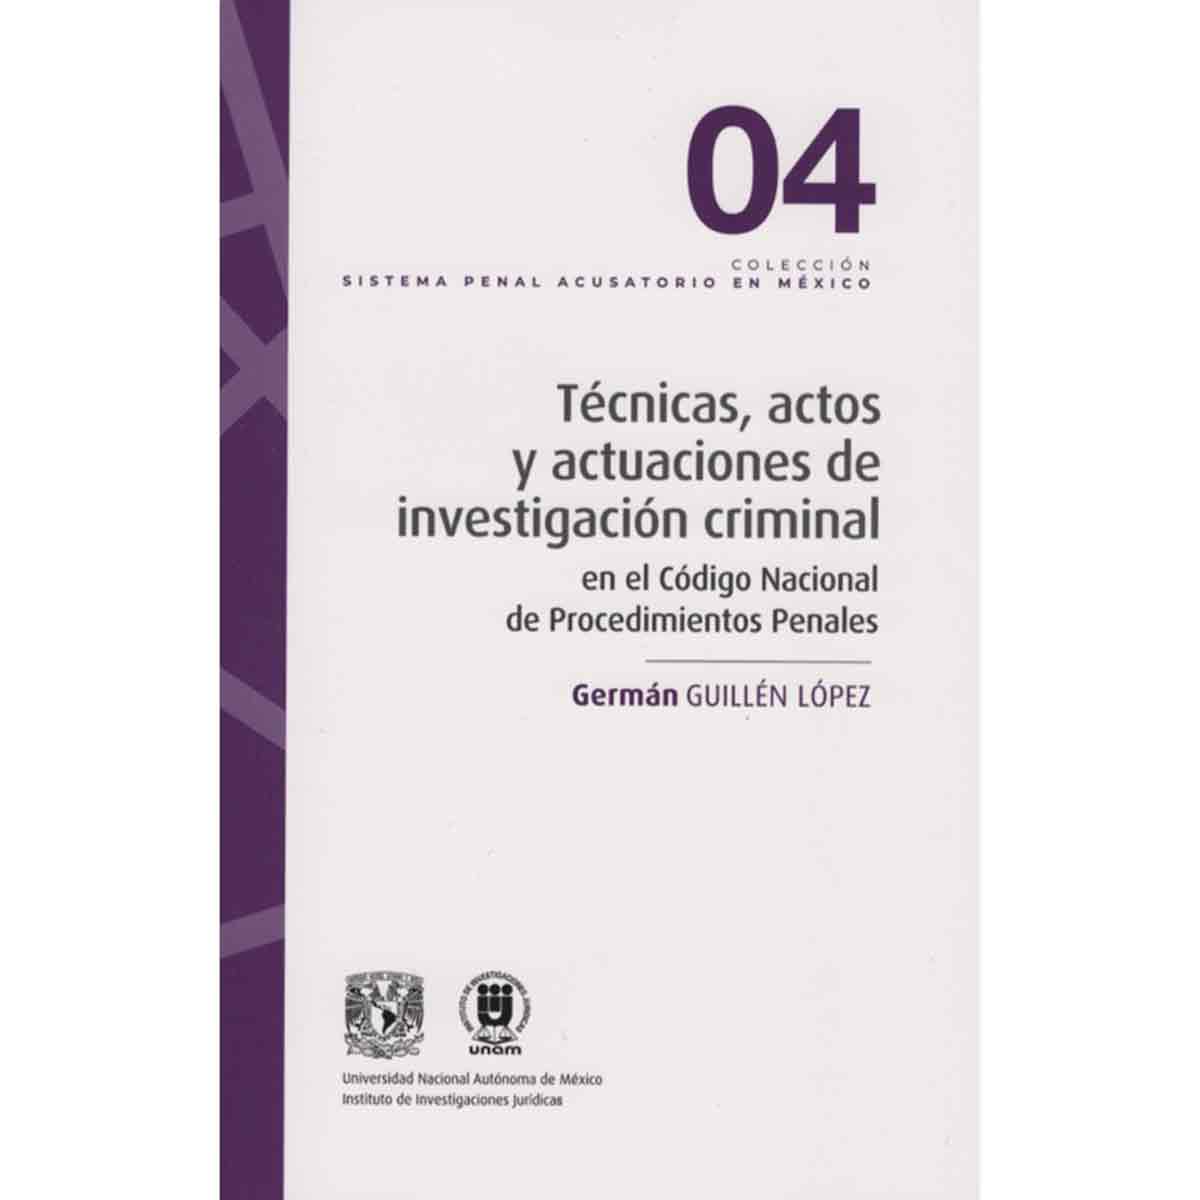 TÉCNICAS, ACTOS Y ACTUACIONES DE INVESTIGACIÓN CRIMINAL EN EL CÓDIGO NACIONAL DE PROCEDIMIENTOS PENALES